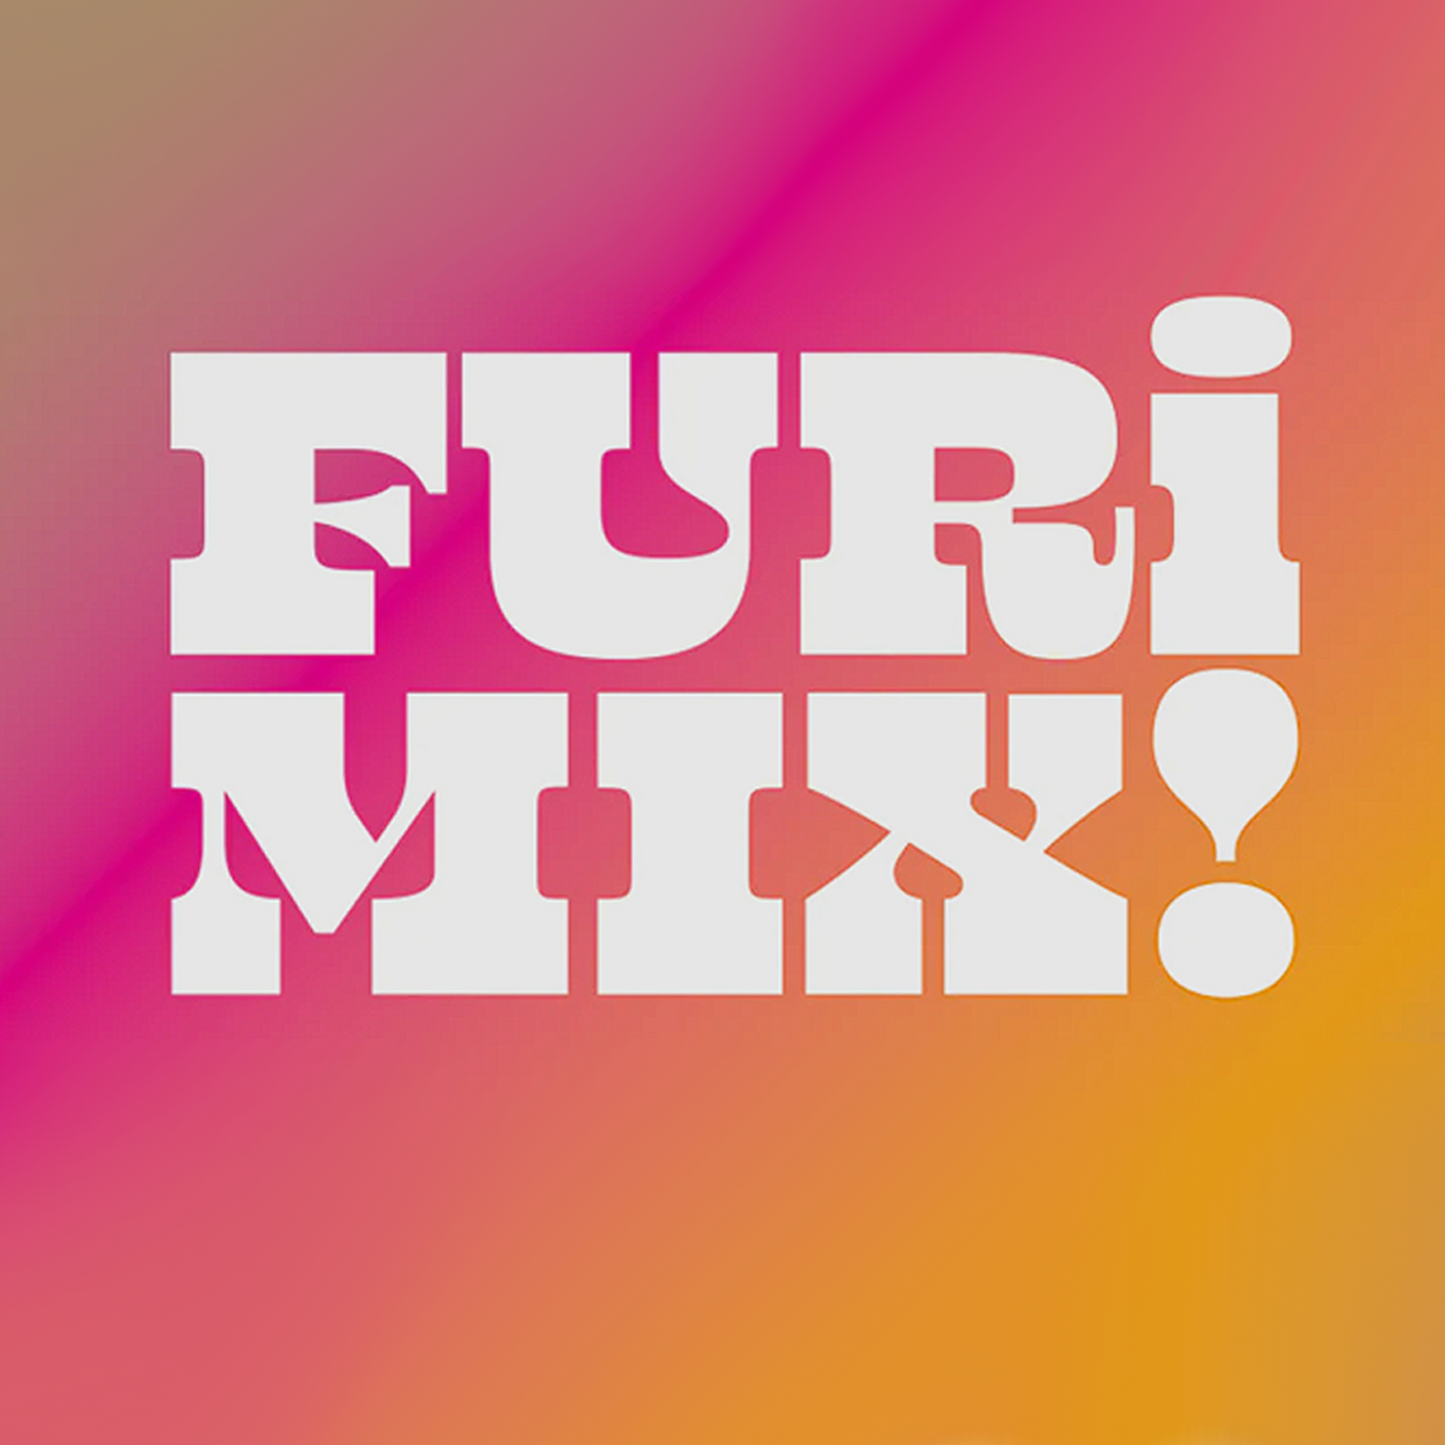 Furimix - Furikake Hawaiian Rice Krispy Treats 6 Servings (Box of 5)